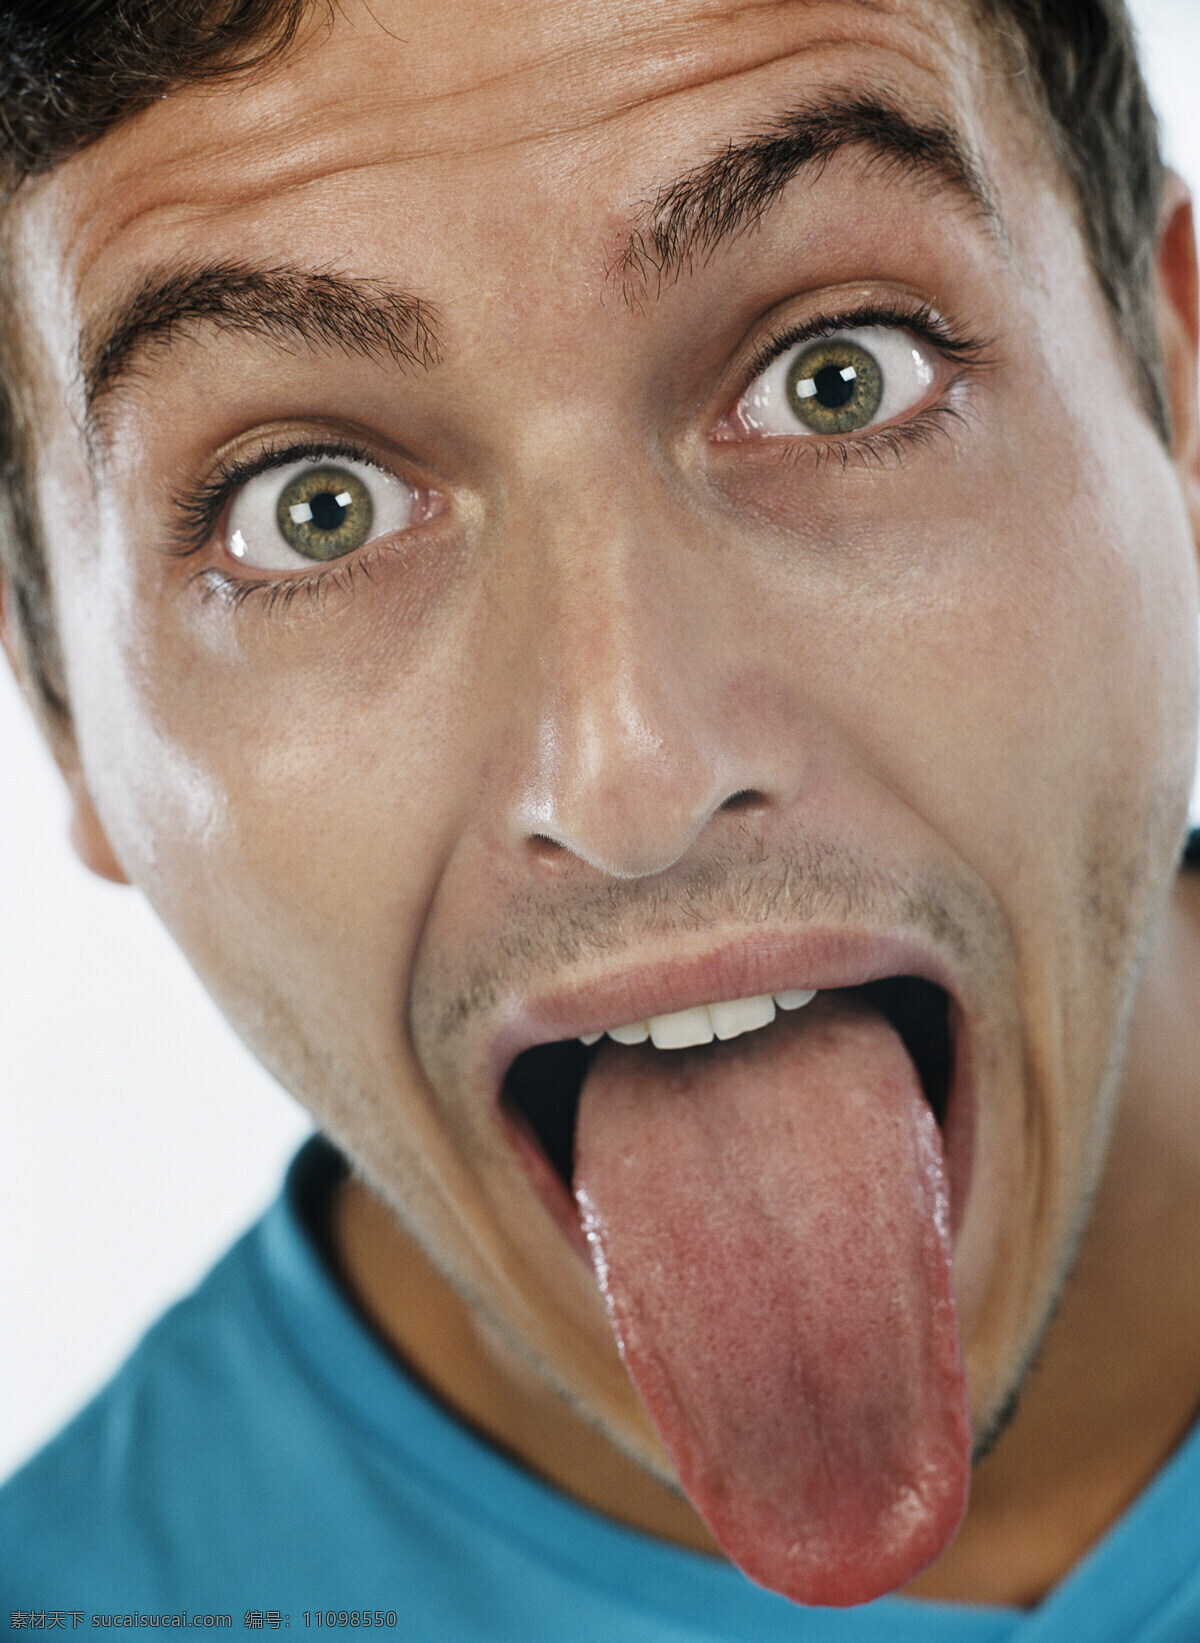 伸舌头 男人 舌头 检查 兴奋 人物 人物摄影 国外人物 生活人物 人物图片